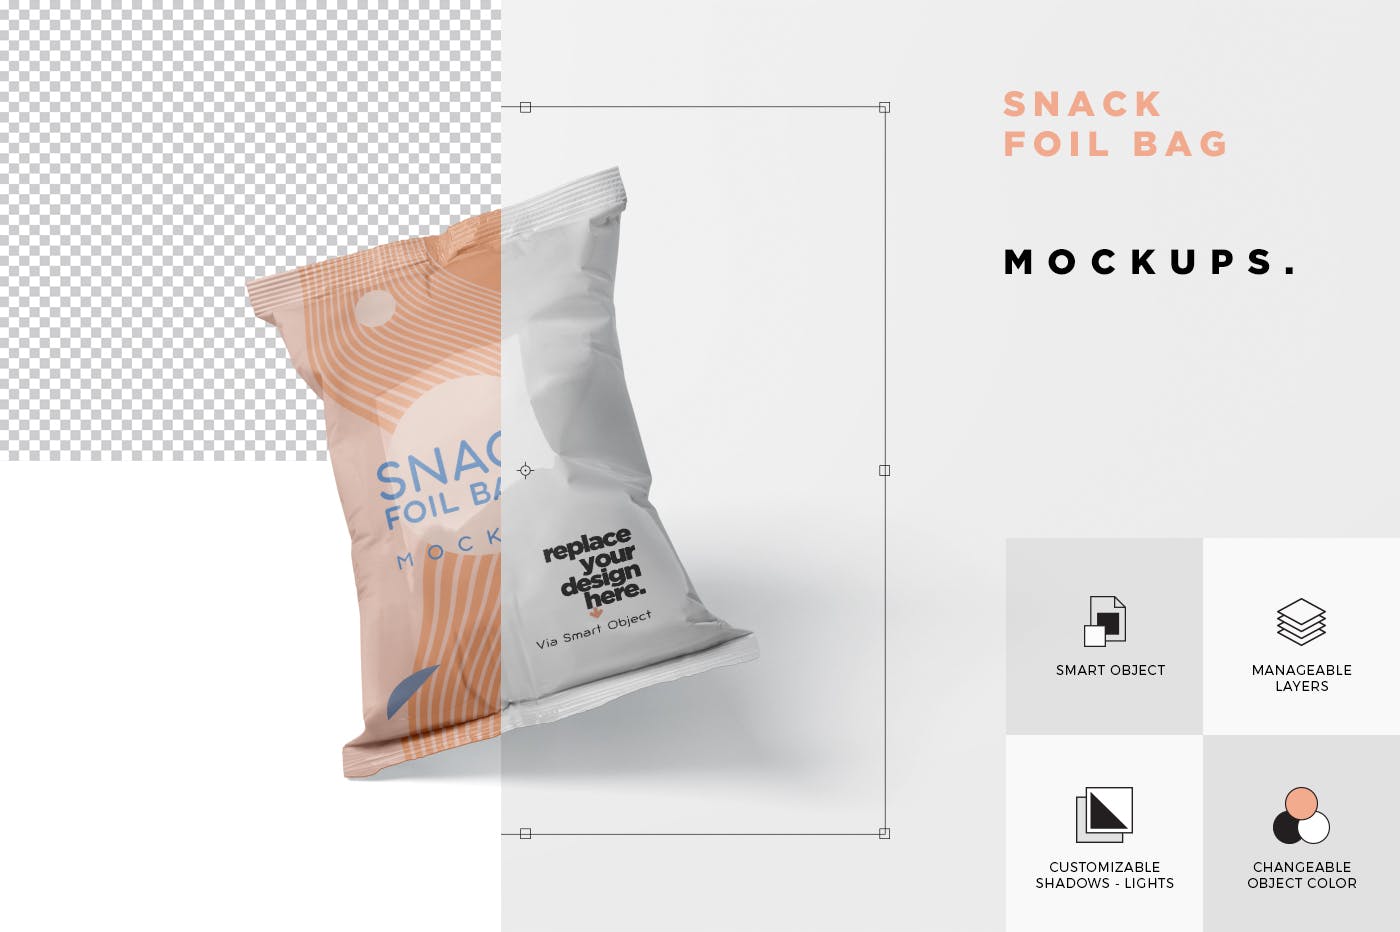 小吃零食铝箔袋/塑料包装袋设计图素材中国精选 Snack Foil Bag Mockup – Plastic插图(5)